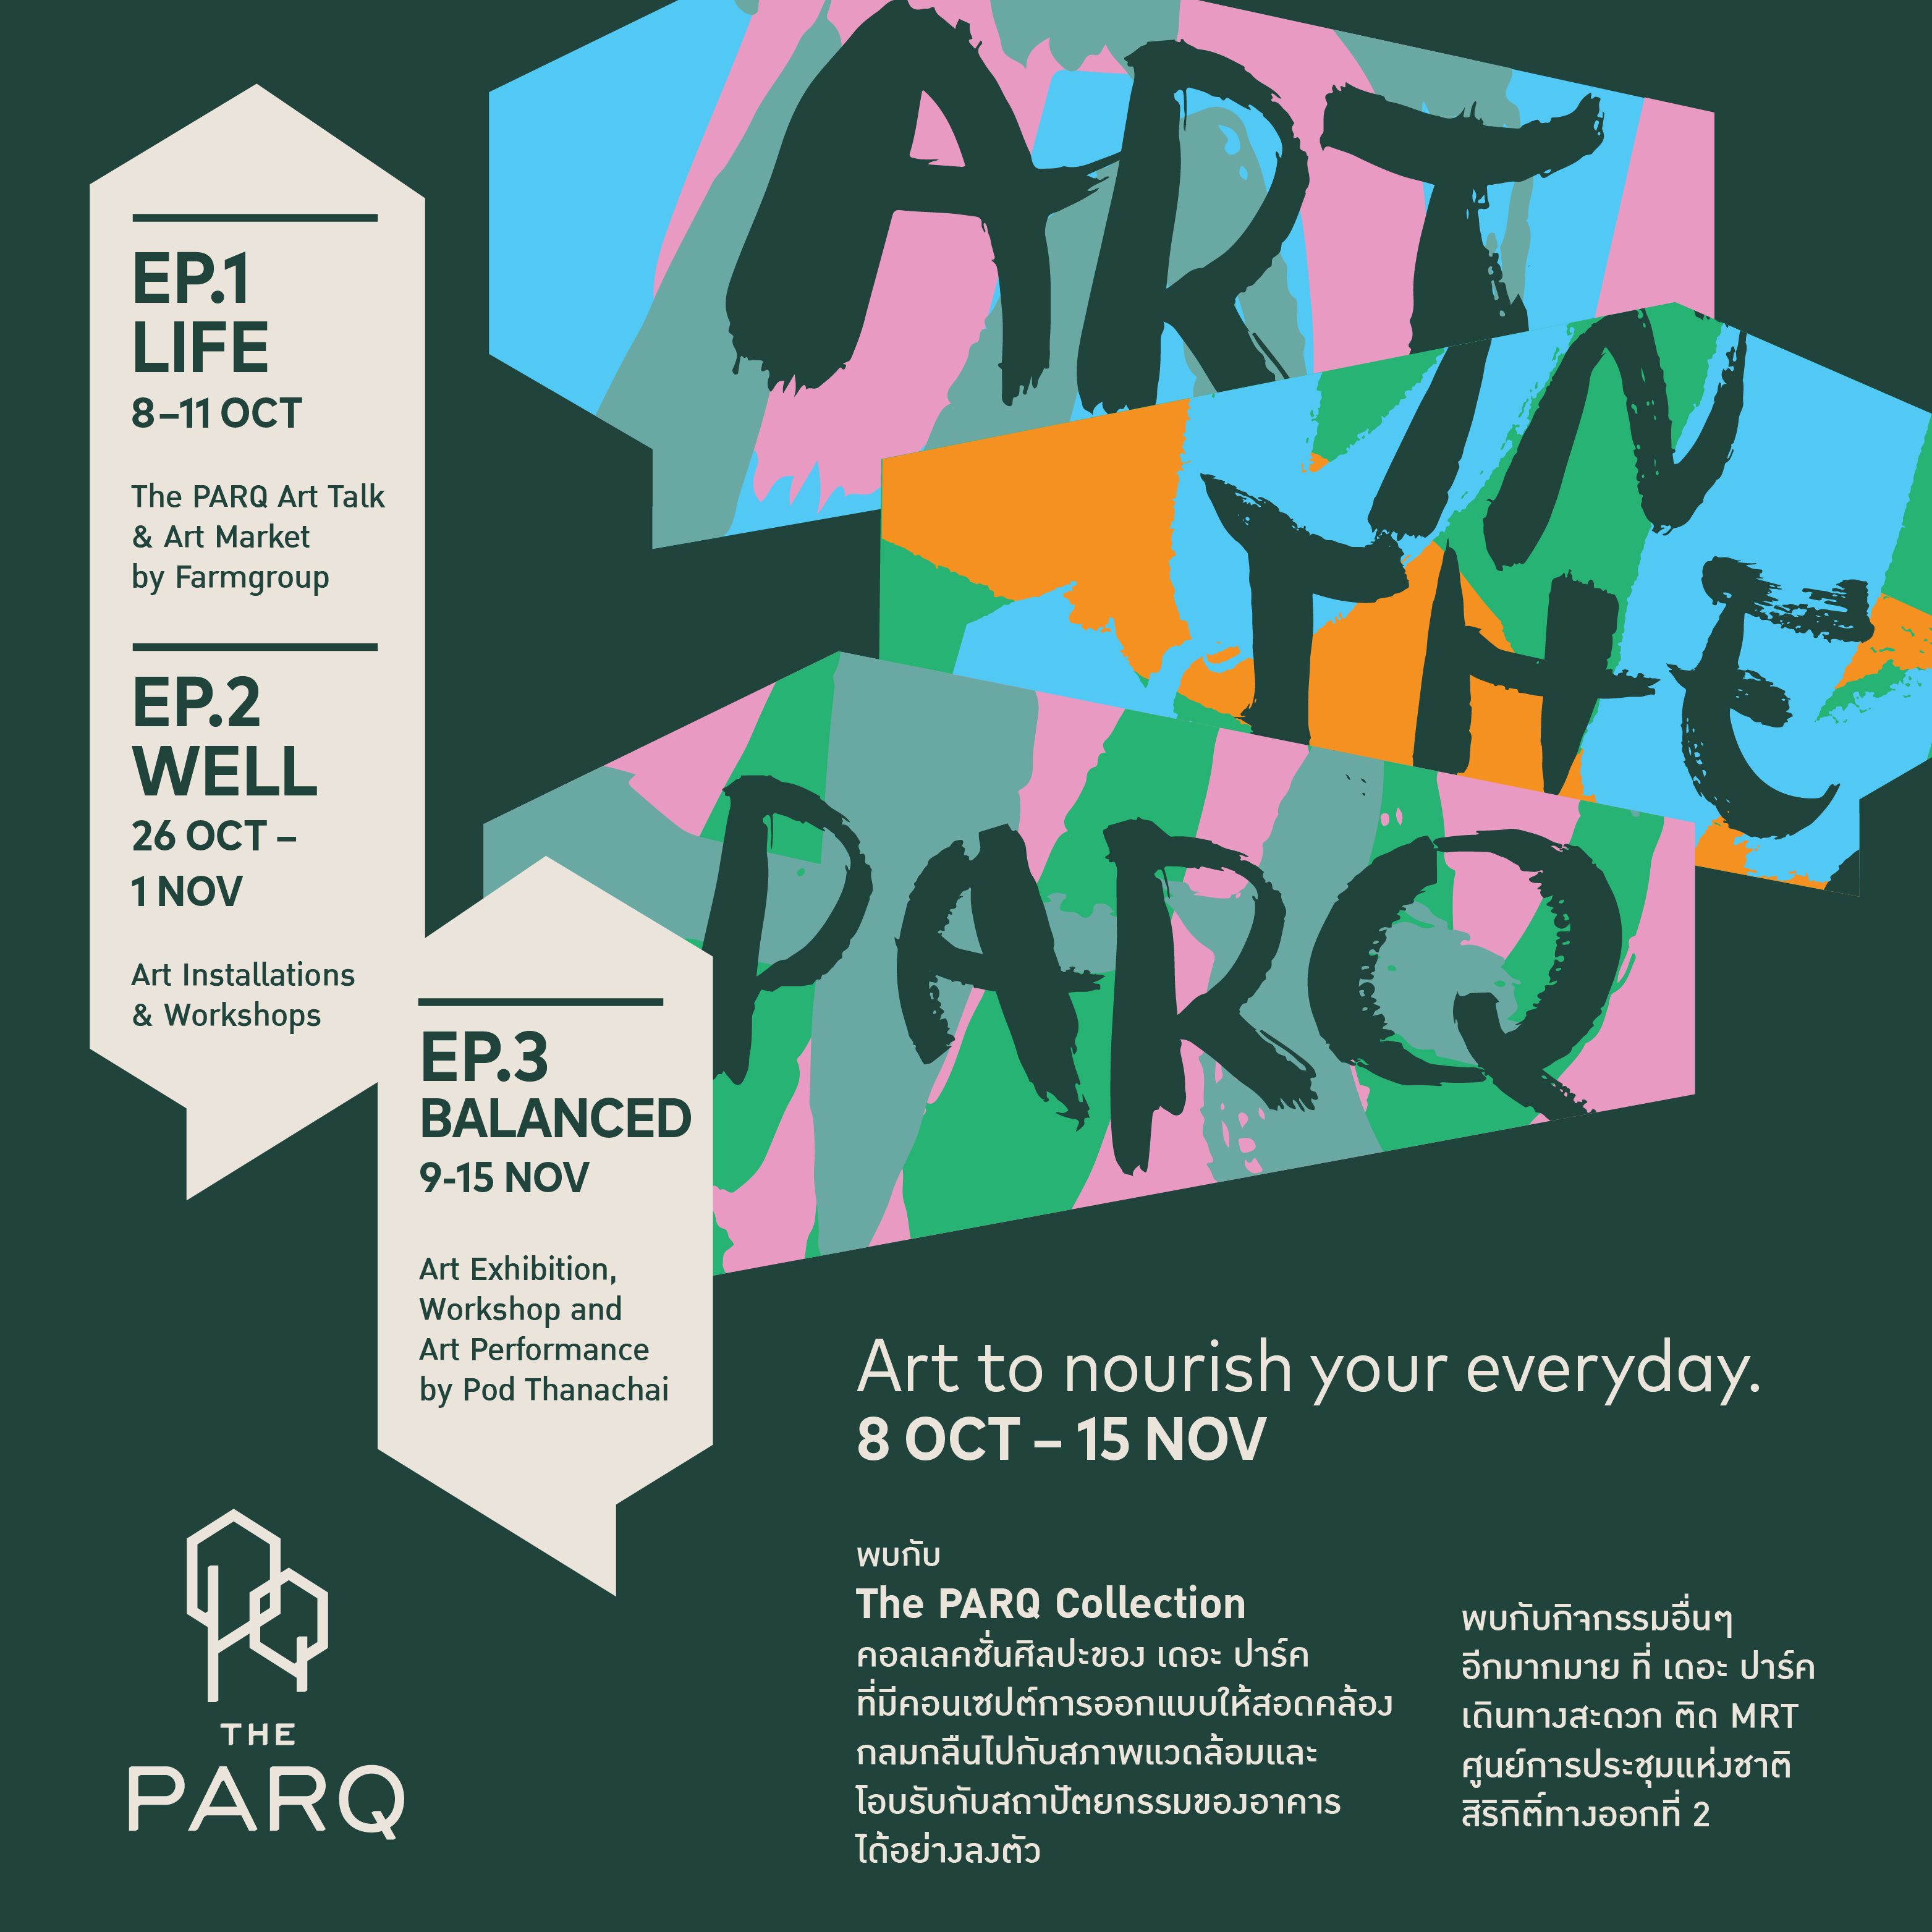 เผยโฉม “The Parq Collection (เดอะ ปาร์ค คอลเลคชั่น)”  มิติใหม่ของการใช้งานศิลป์เพื่อยกระดับการใช้ชีวิตในพื้นที่มิกซ์ยูส  เพลิดเพลิน Art Market และเวิร์คข้อปสุดชิค | Techsauce